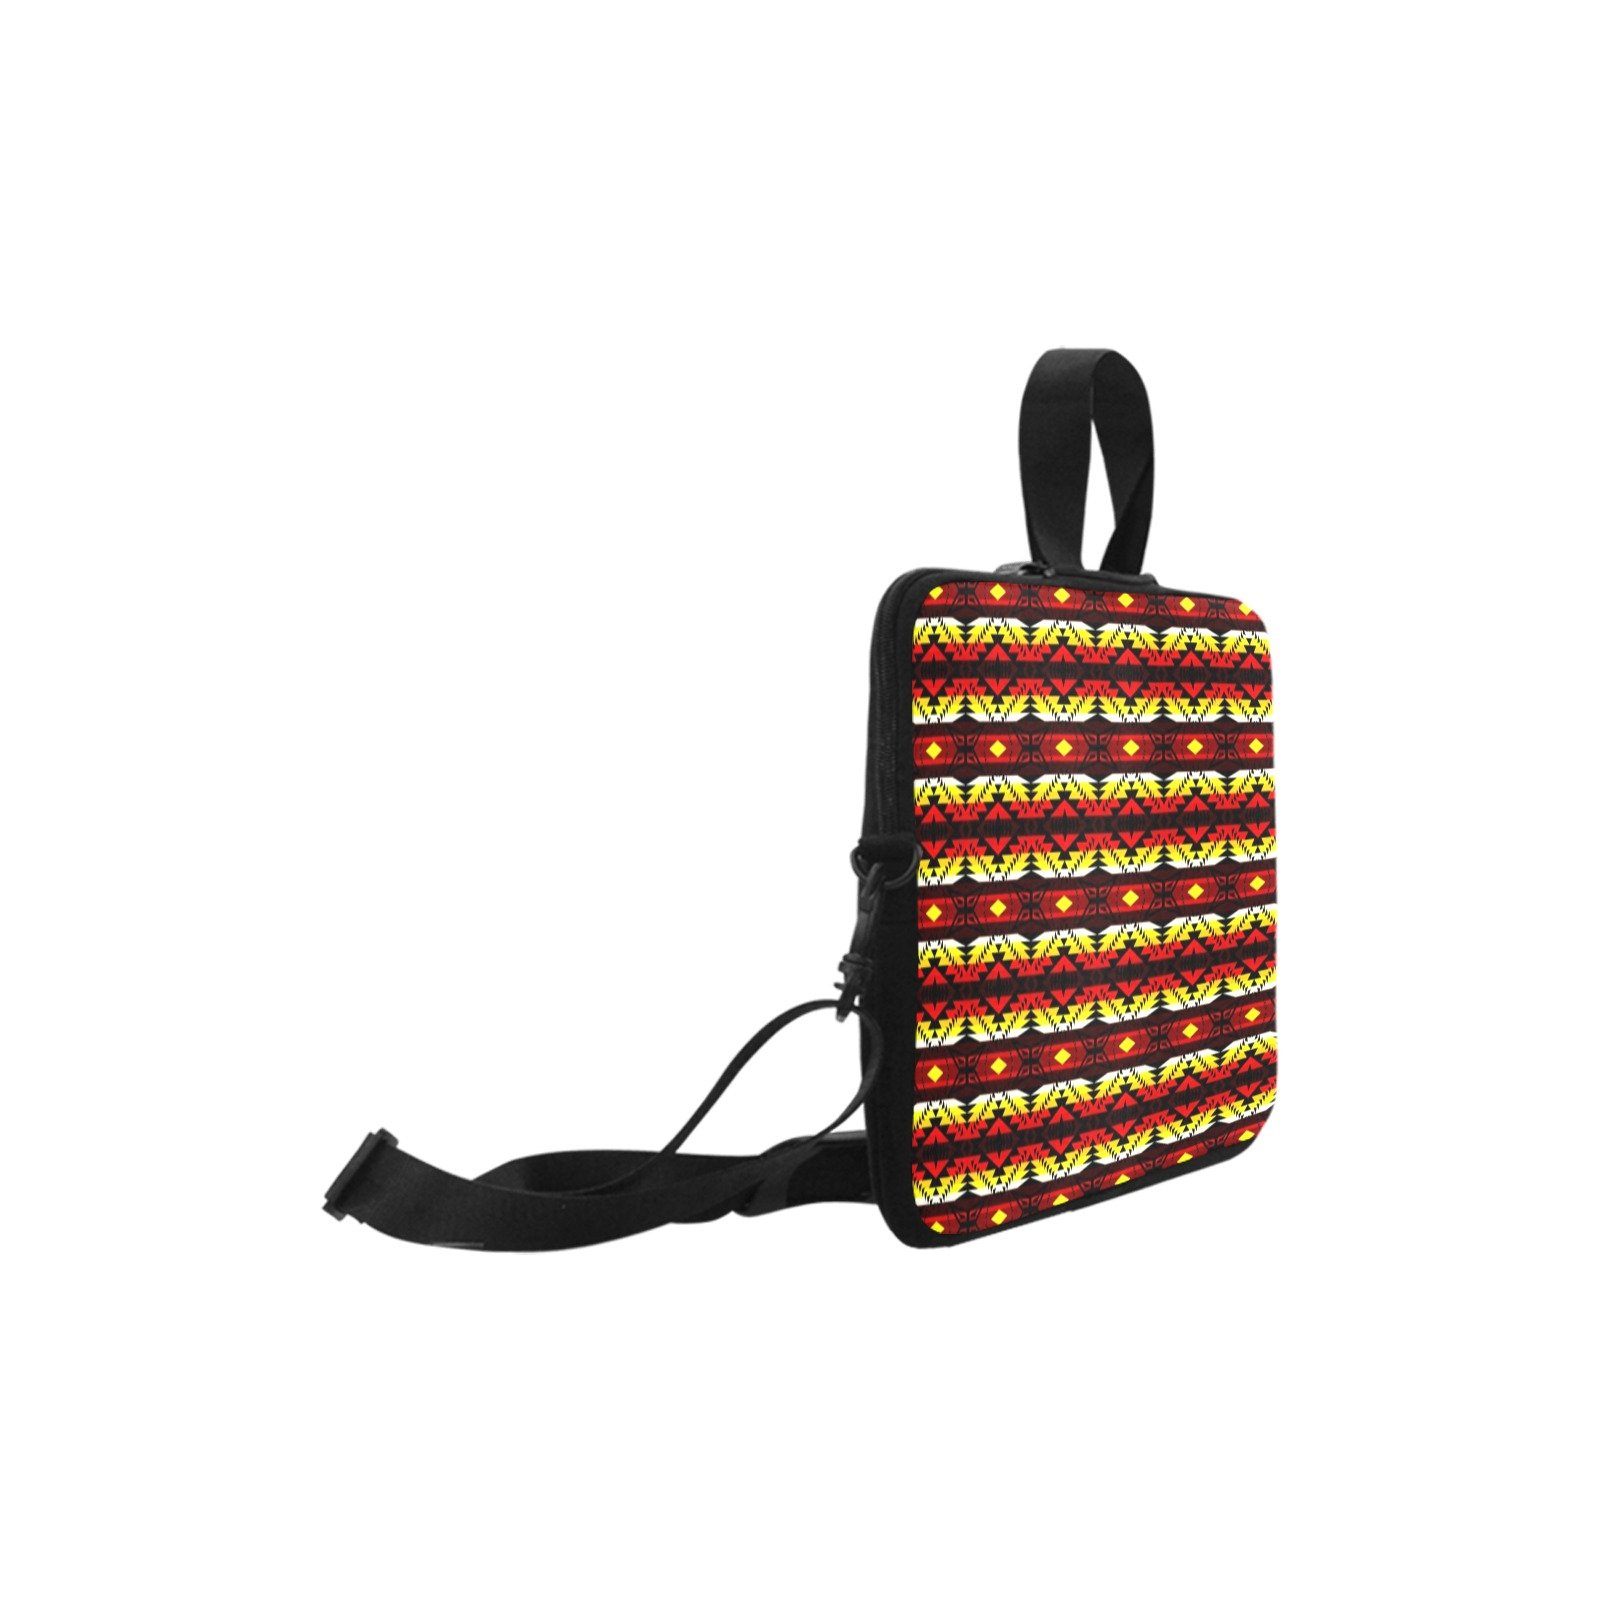 Canyon War Party Laptop Handbags 10" bag e-joyer 